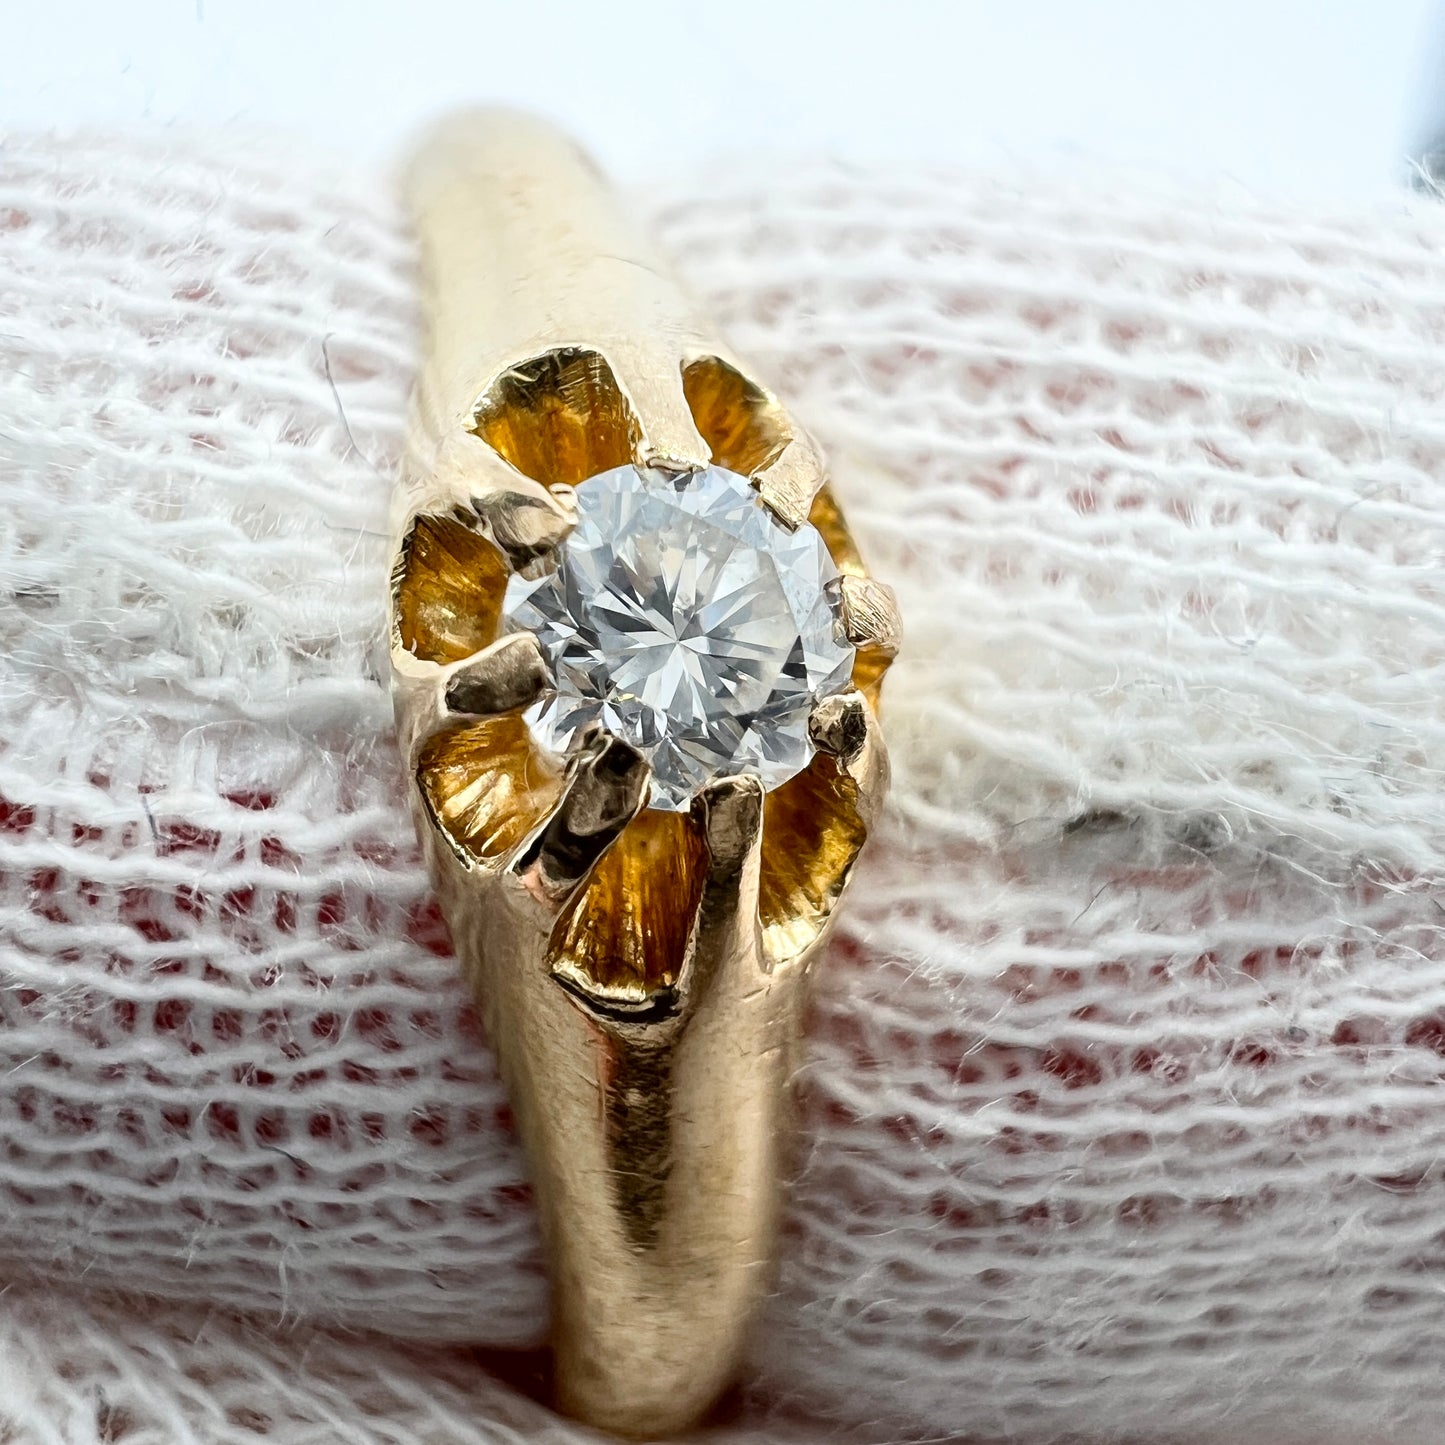 Bernhard Herz, Sweden 1912. Antique 18k Gold Diamond Wedding Band Ring.